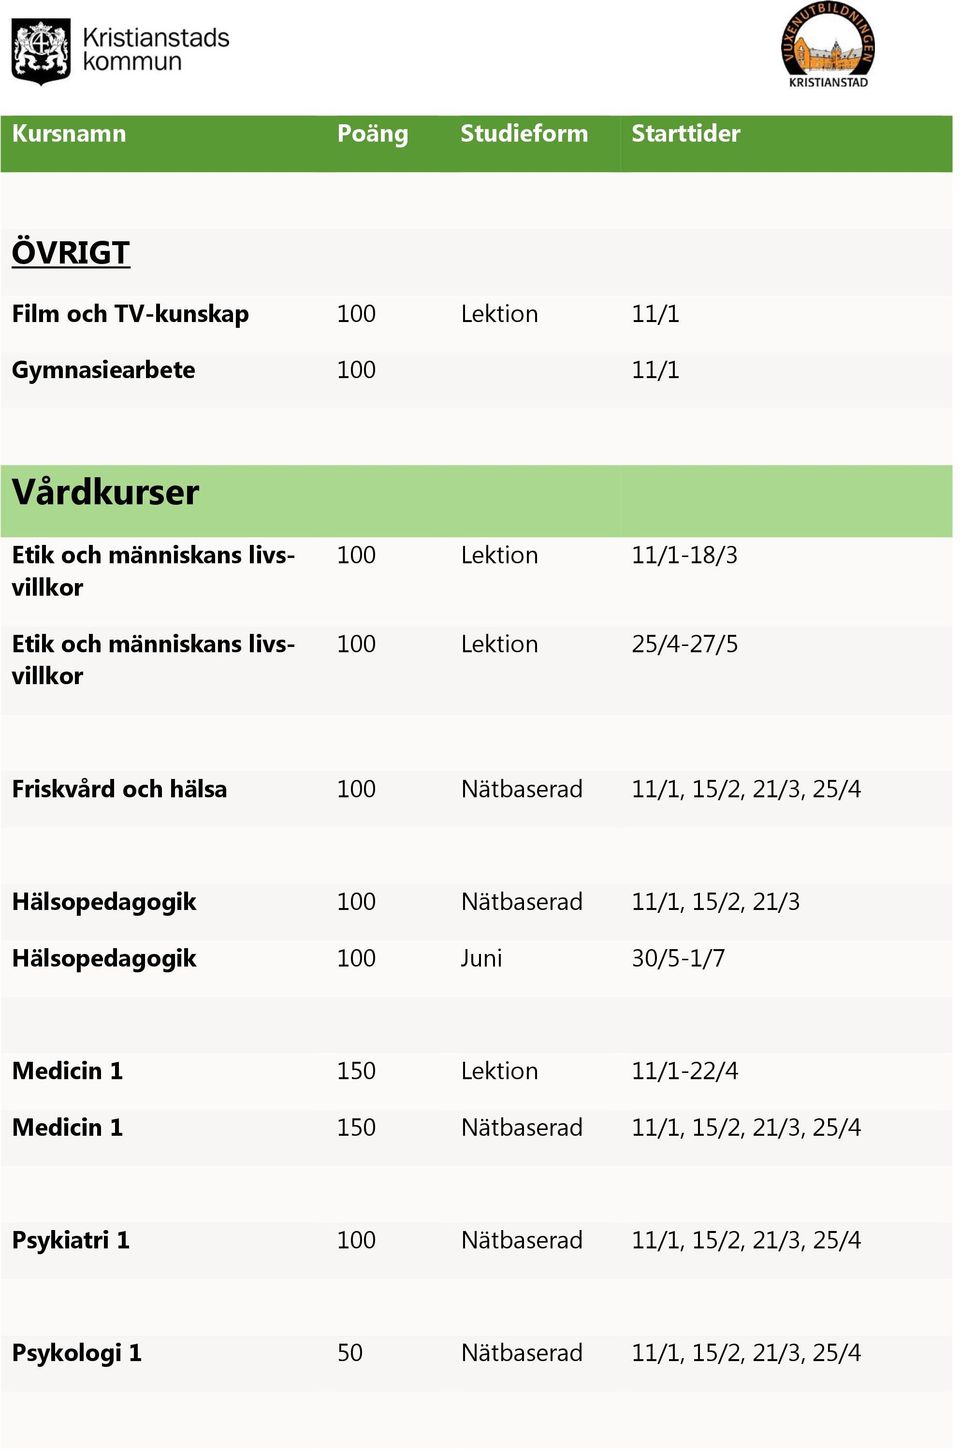 Hälsopedagogik 100 Nätbaserad 11/1, 15/2, 21/3 Hälsopedagogik 100 Juni 30/5-1/7 Medicin 1 150 Lektion 11/1-22/4 Medicin 1 150